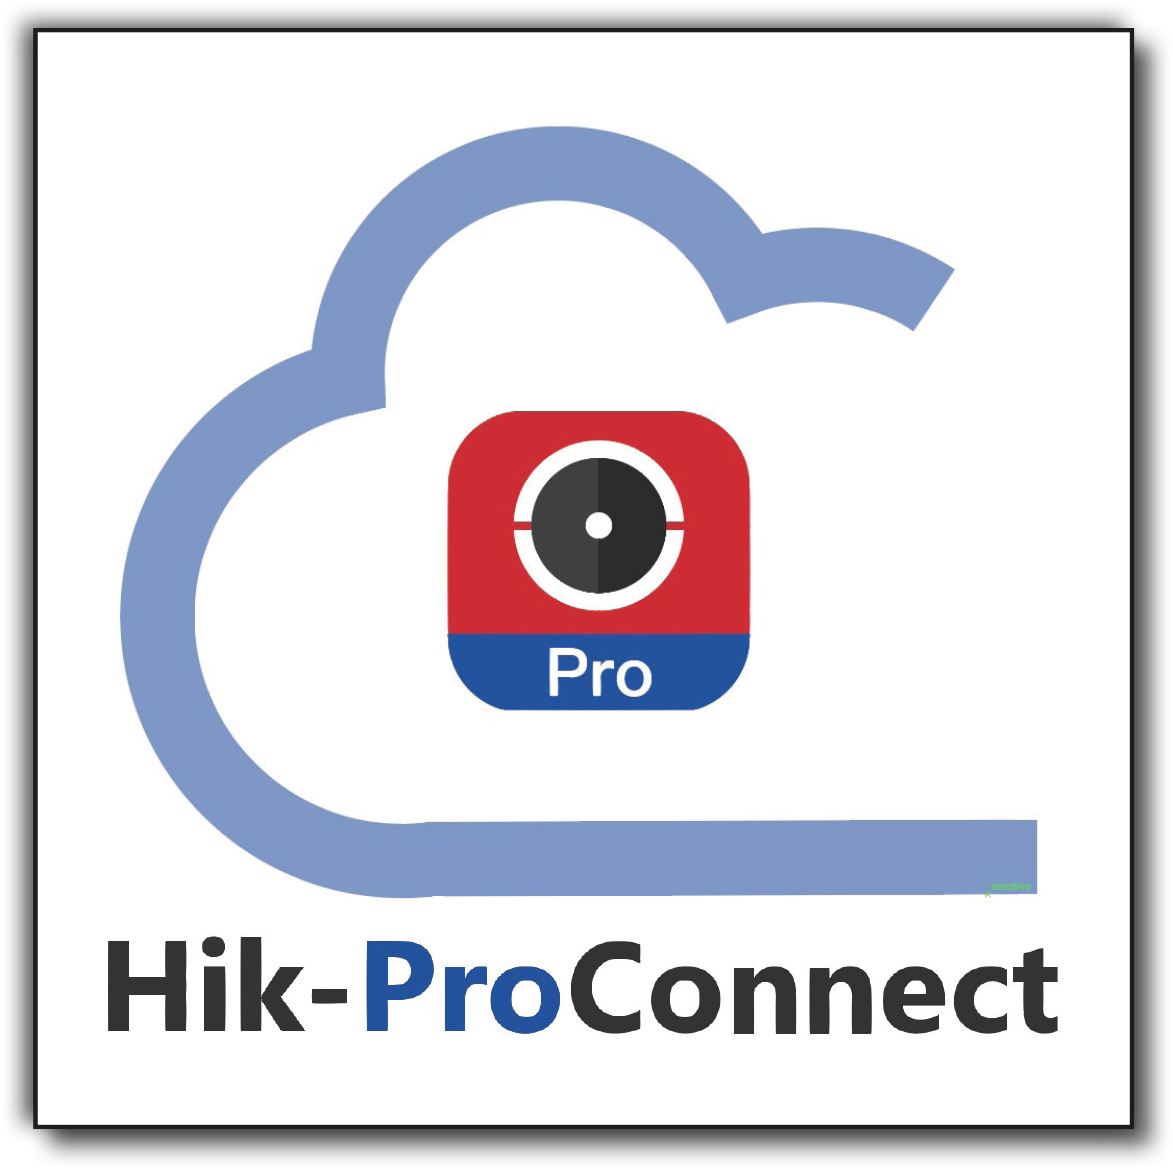 Hik-Pro Connect